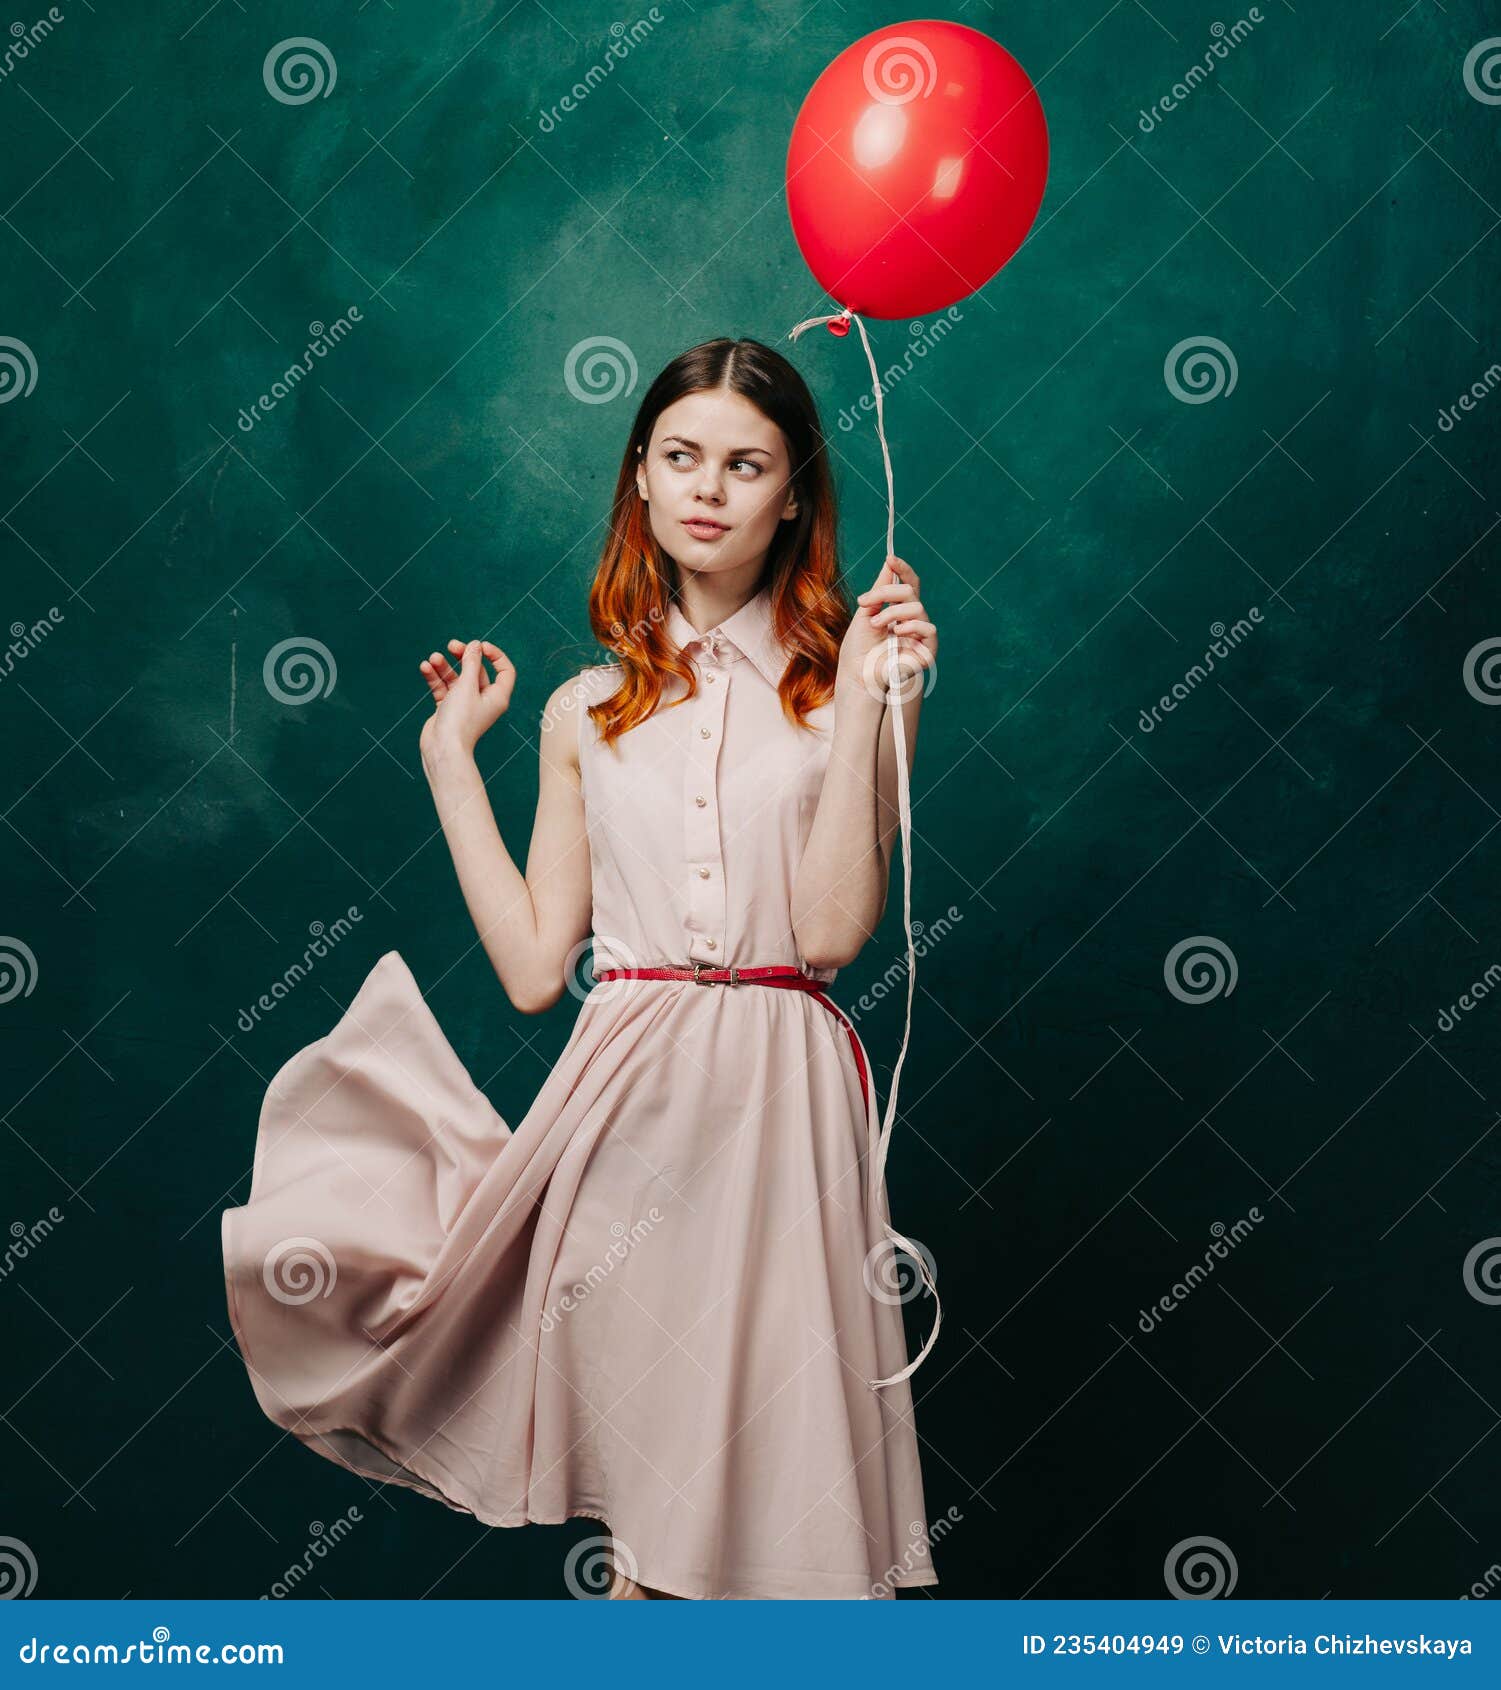 快乐和自由。可爱的华丽微笑女孩玩五颜六色的气球。年轻可爱的长发女人在夏天玩得开心。拿着一堆彩色气球的女人动物植物免费下载_jpg格式_2376像素_编号43623168-千图网